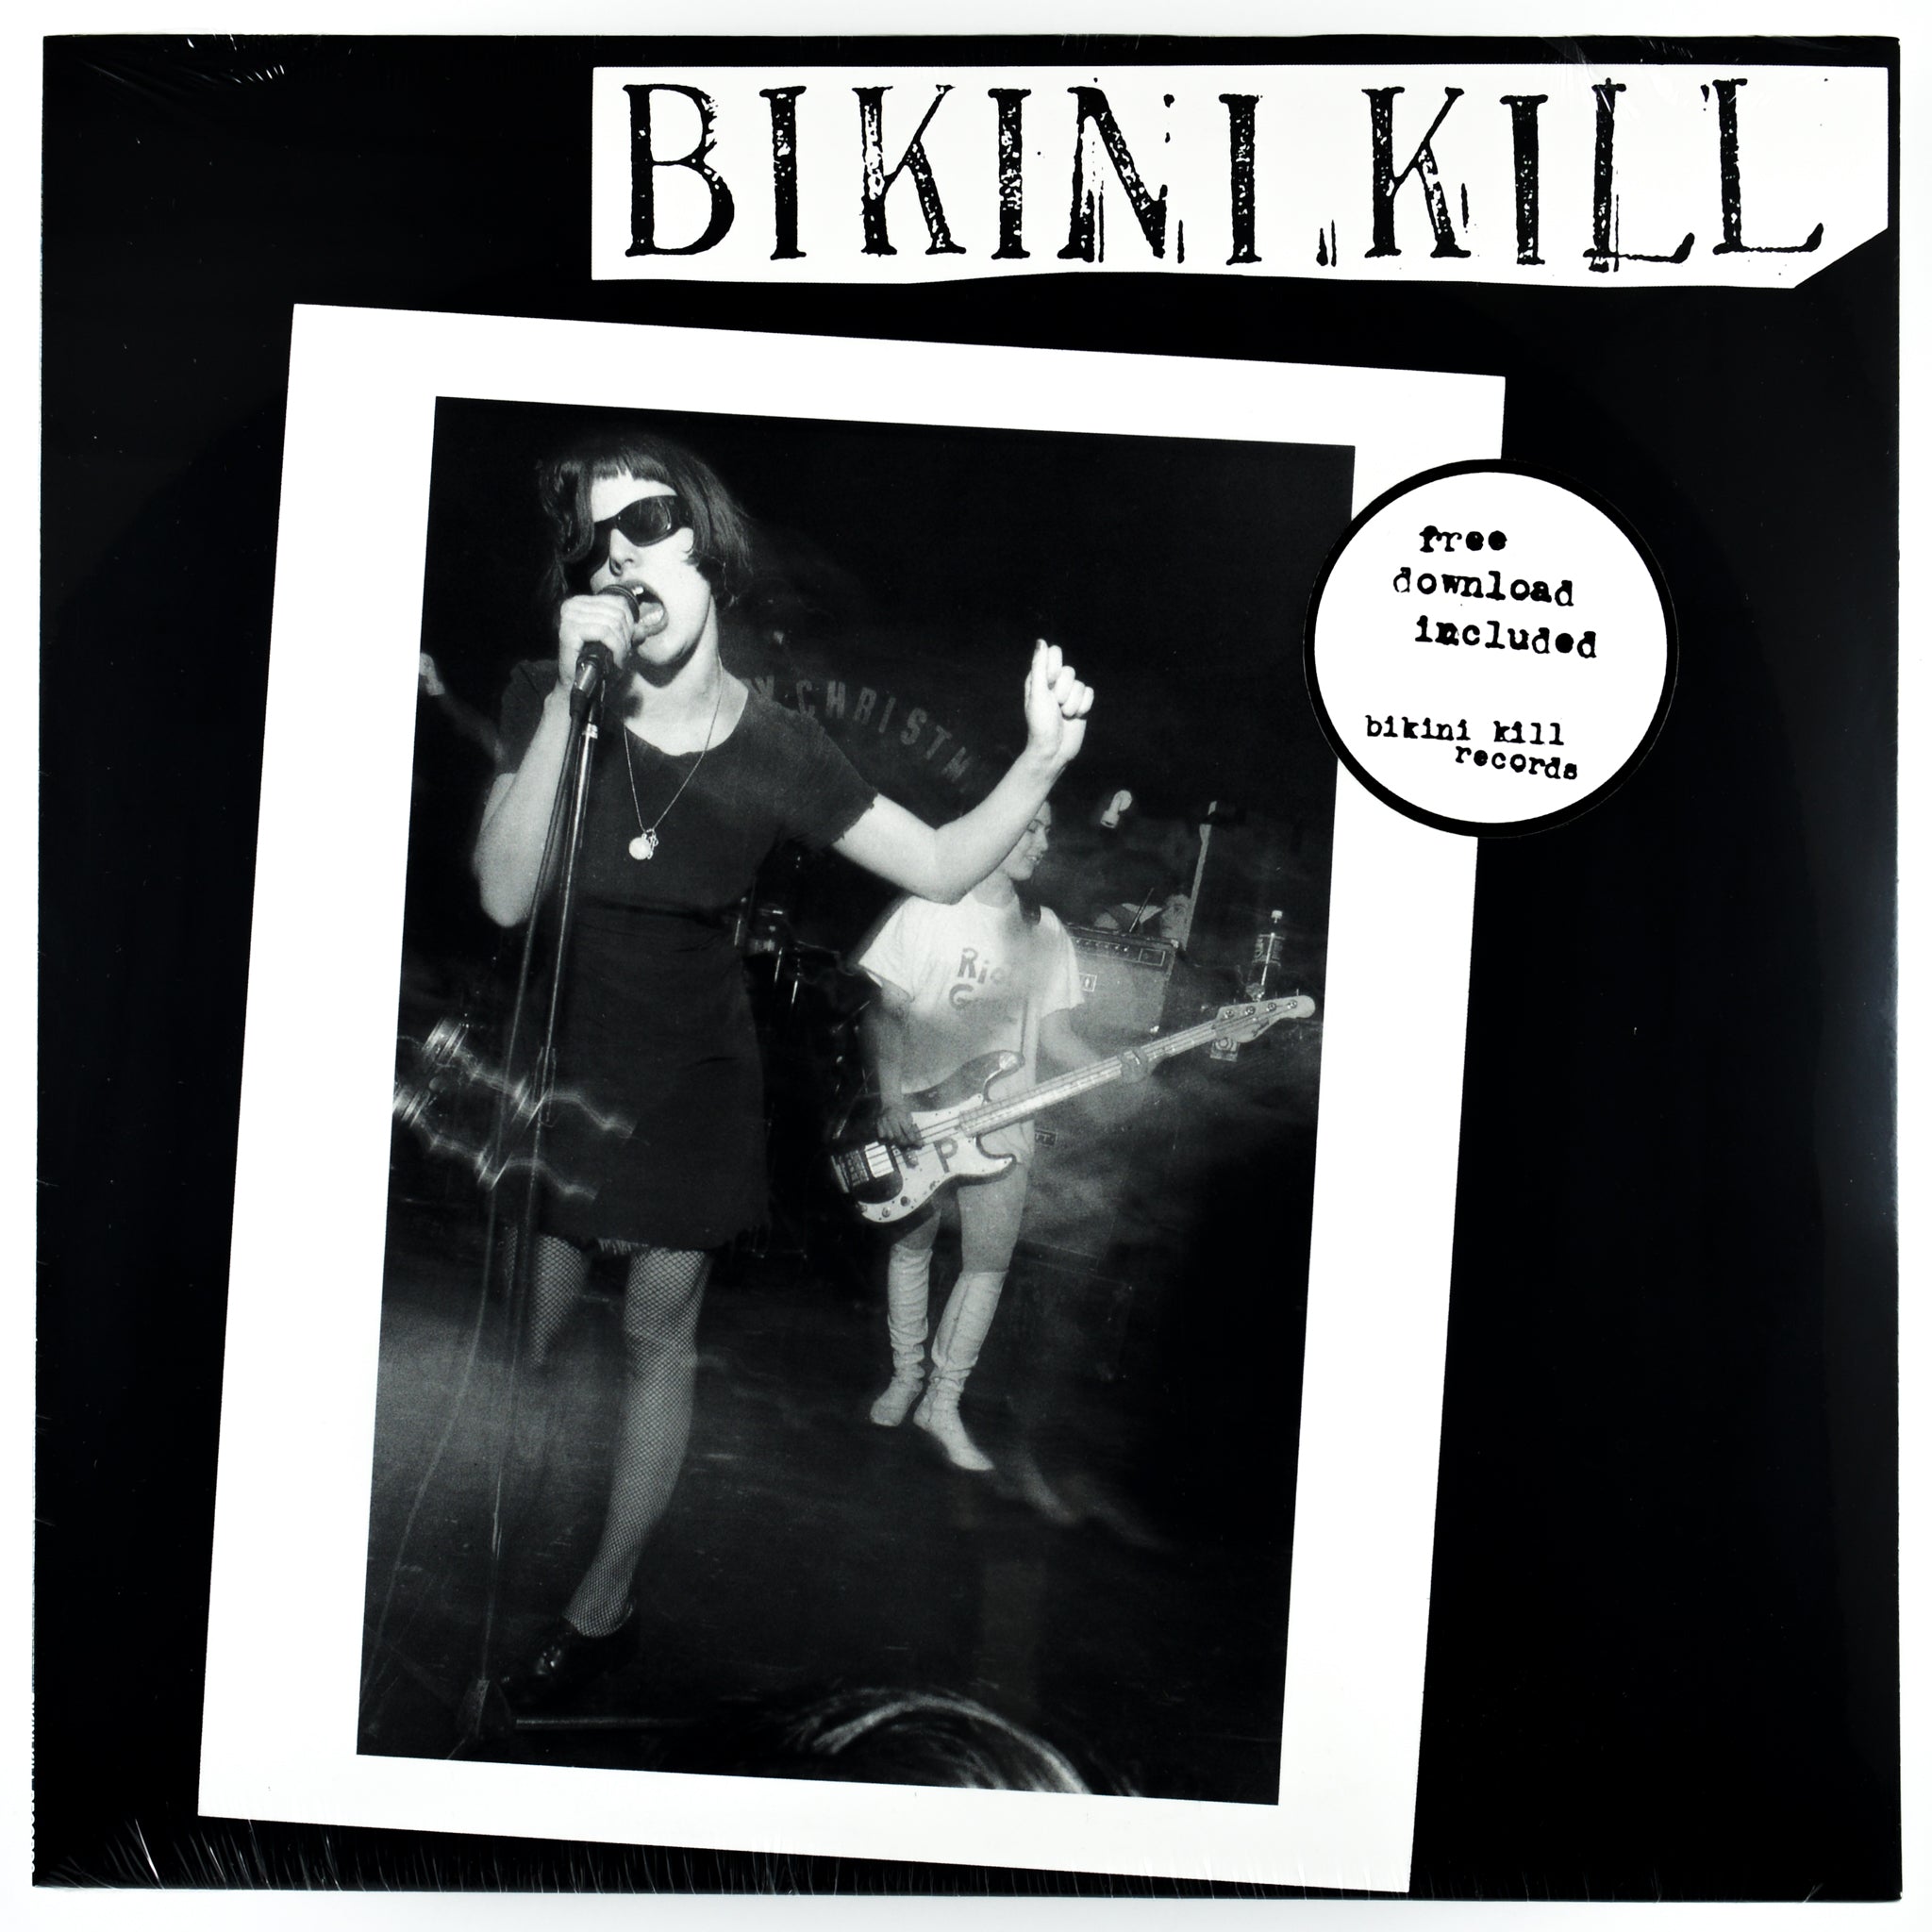 Bikini Kill Lp - S/T